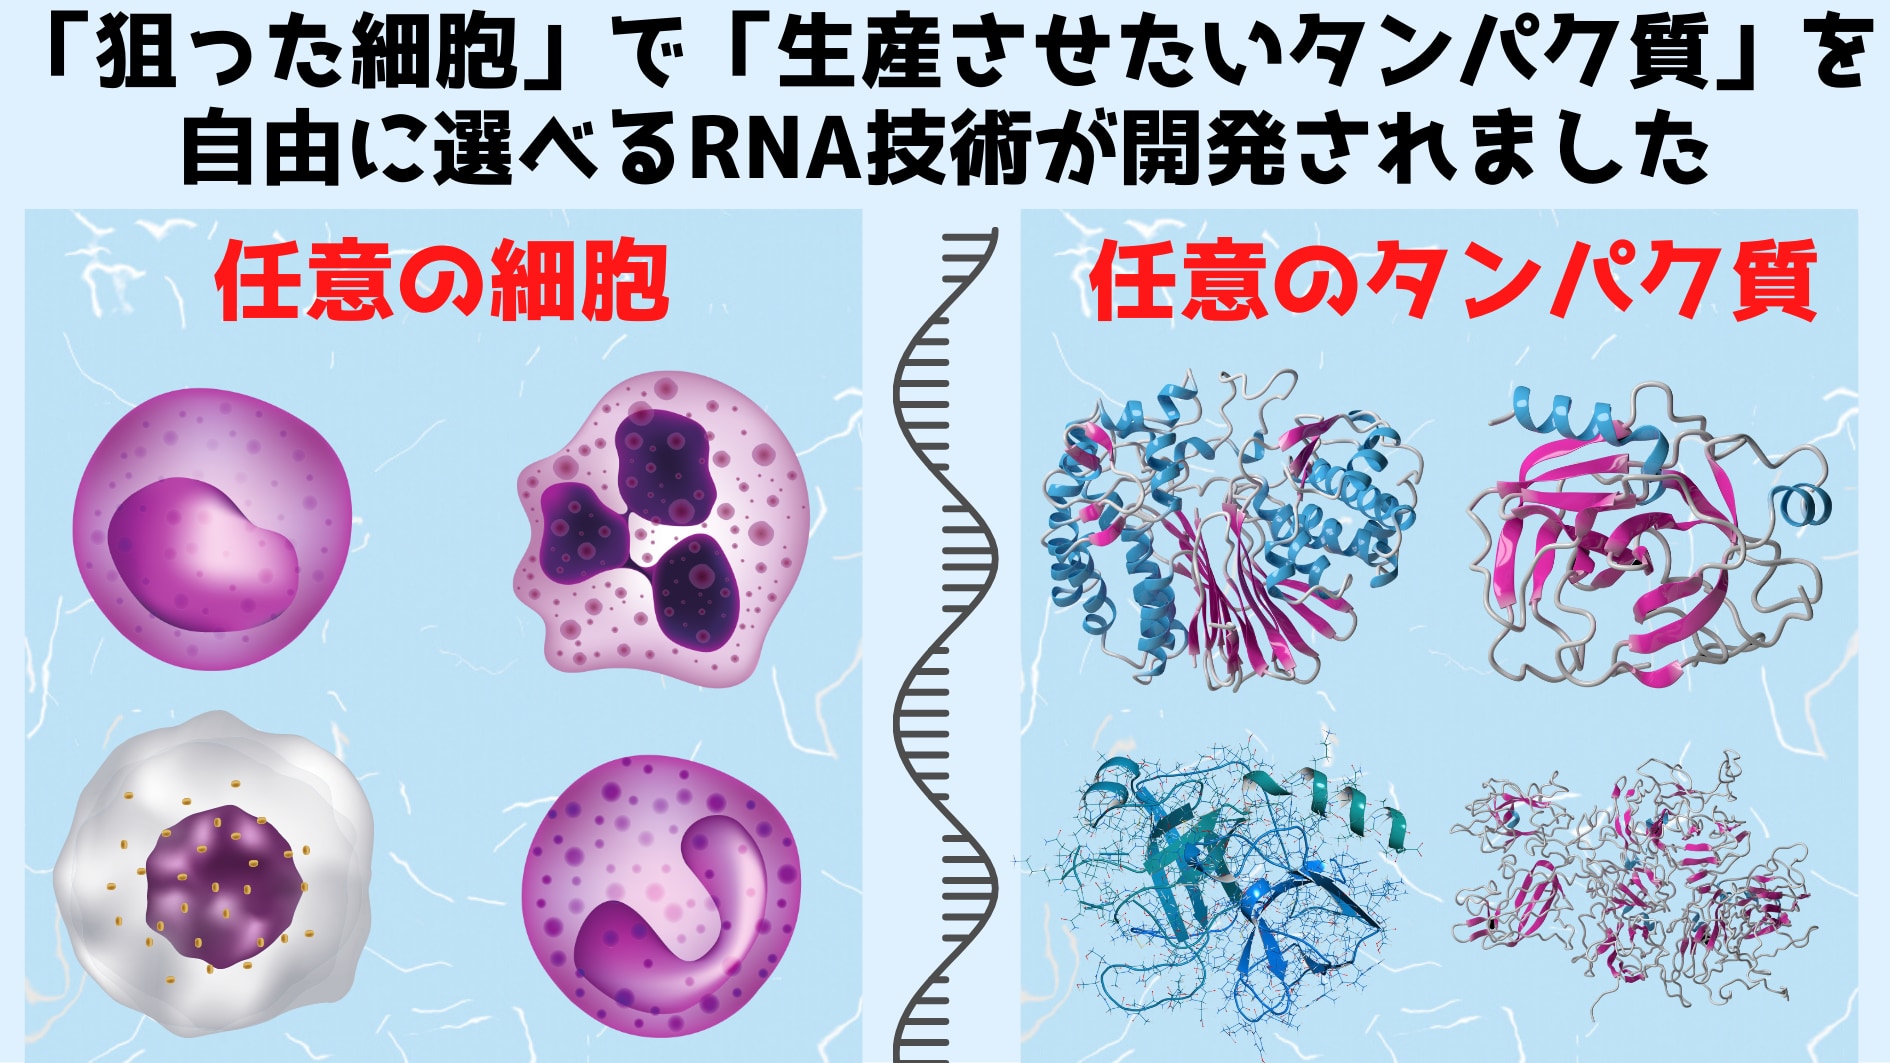 がん細胞だけを殺す「毒入りRNA」も可能